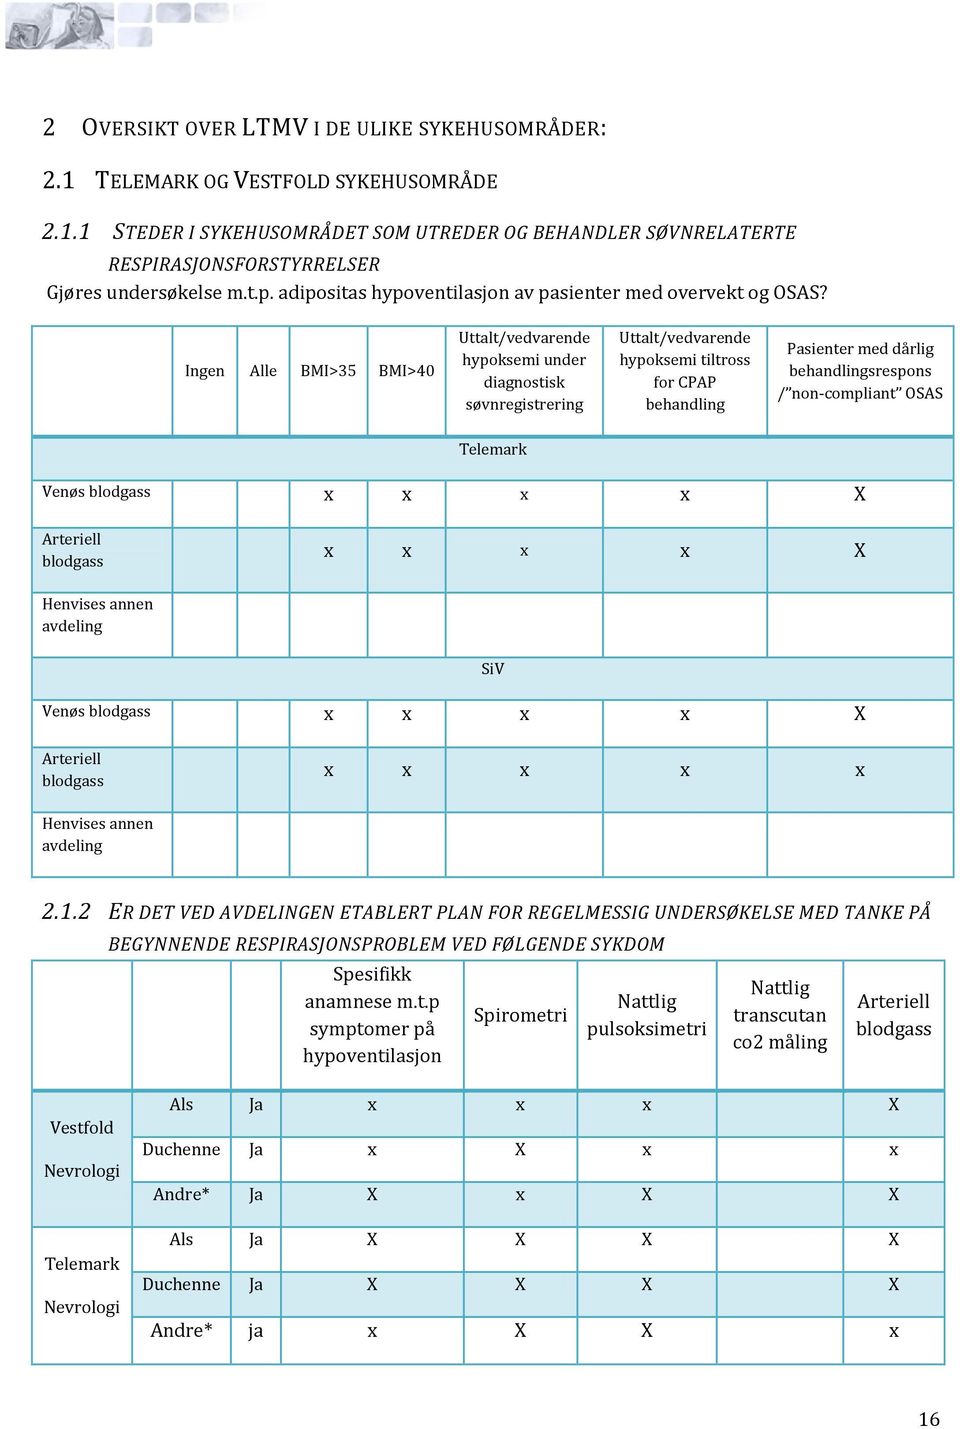 Ingen Alle BMI>35 BMI>40 Uttalt/vedvarende hypoksemi under diagnostisk søvnregistrering Uttalt/vedvarende hypoksemi tiltross for CPAP behandling Pasienter med dårlig behandlingsrespons /